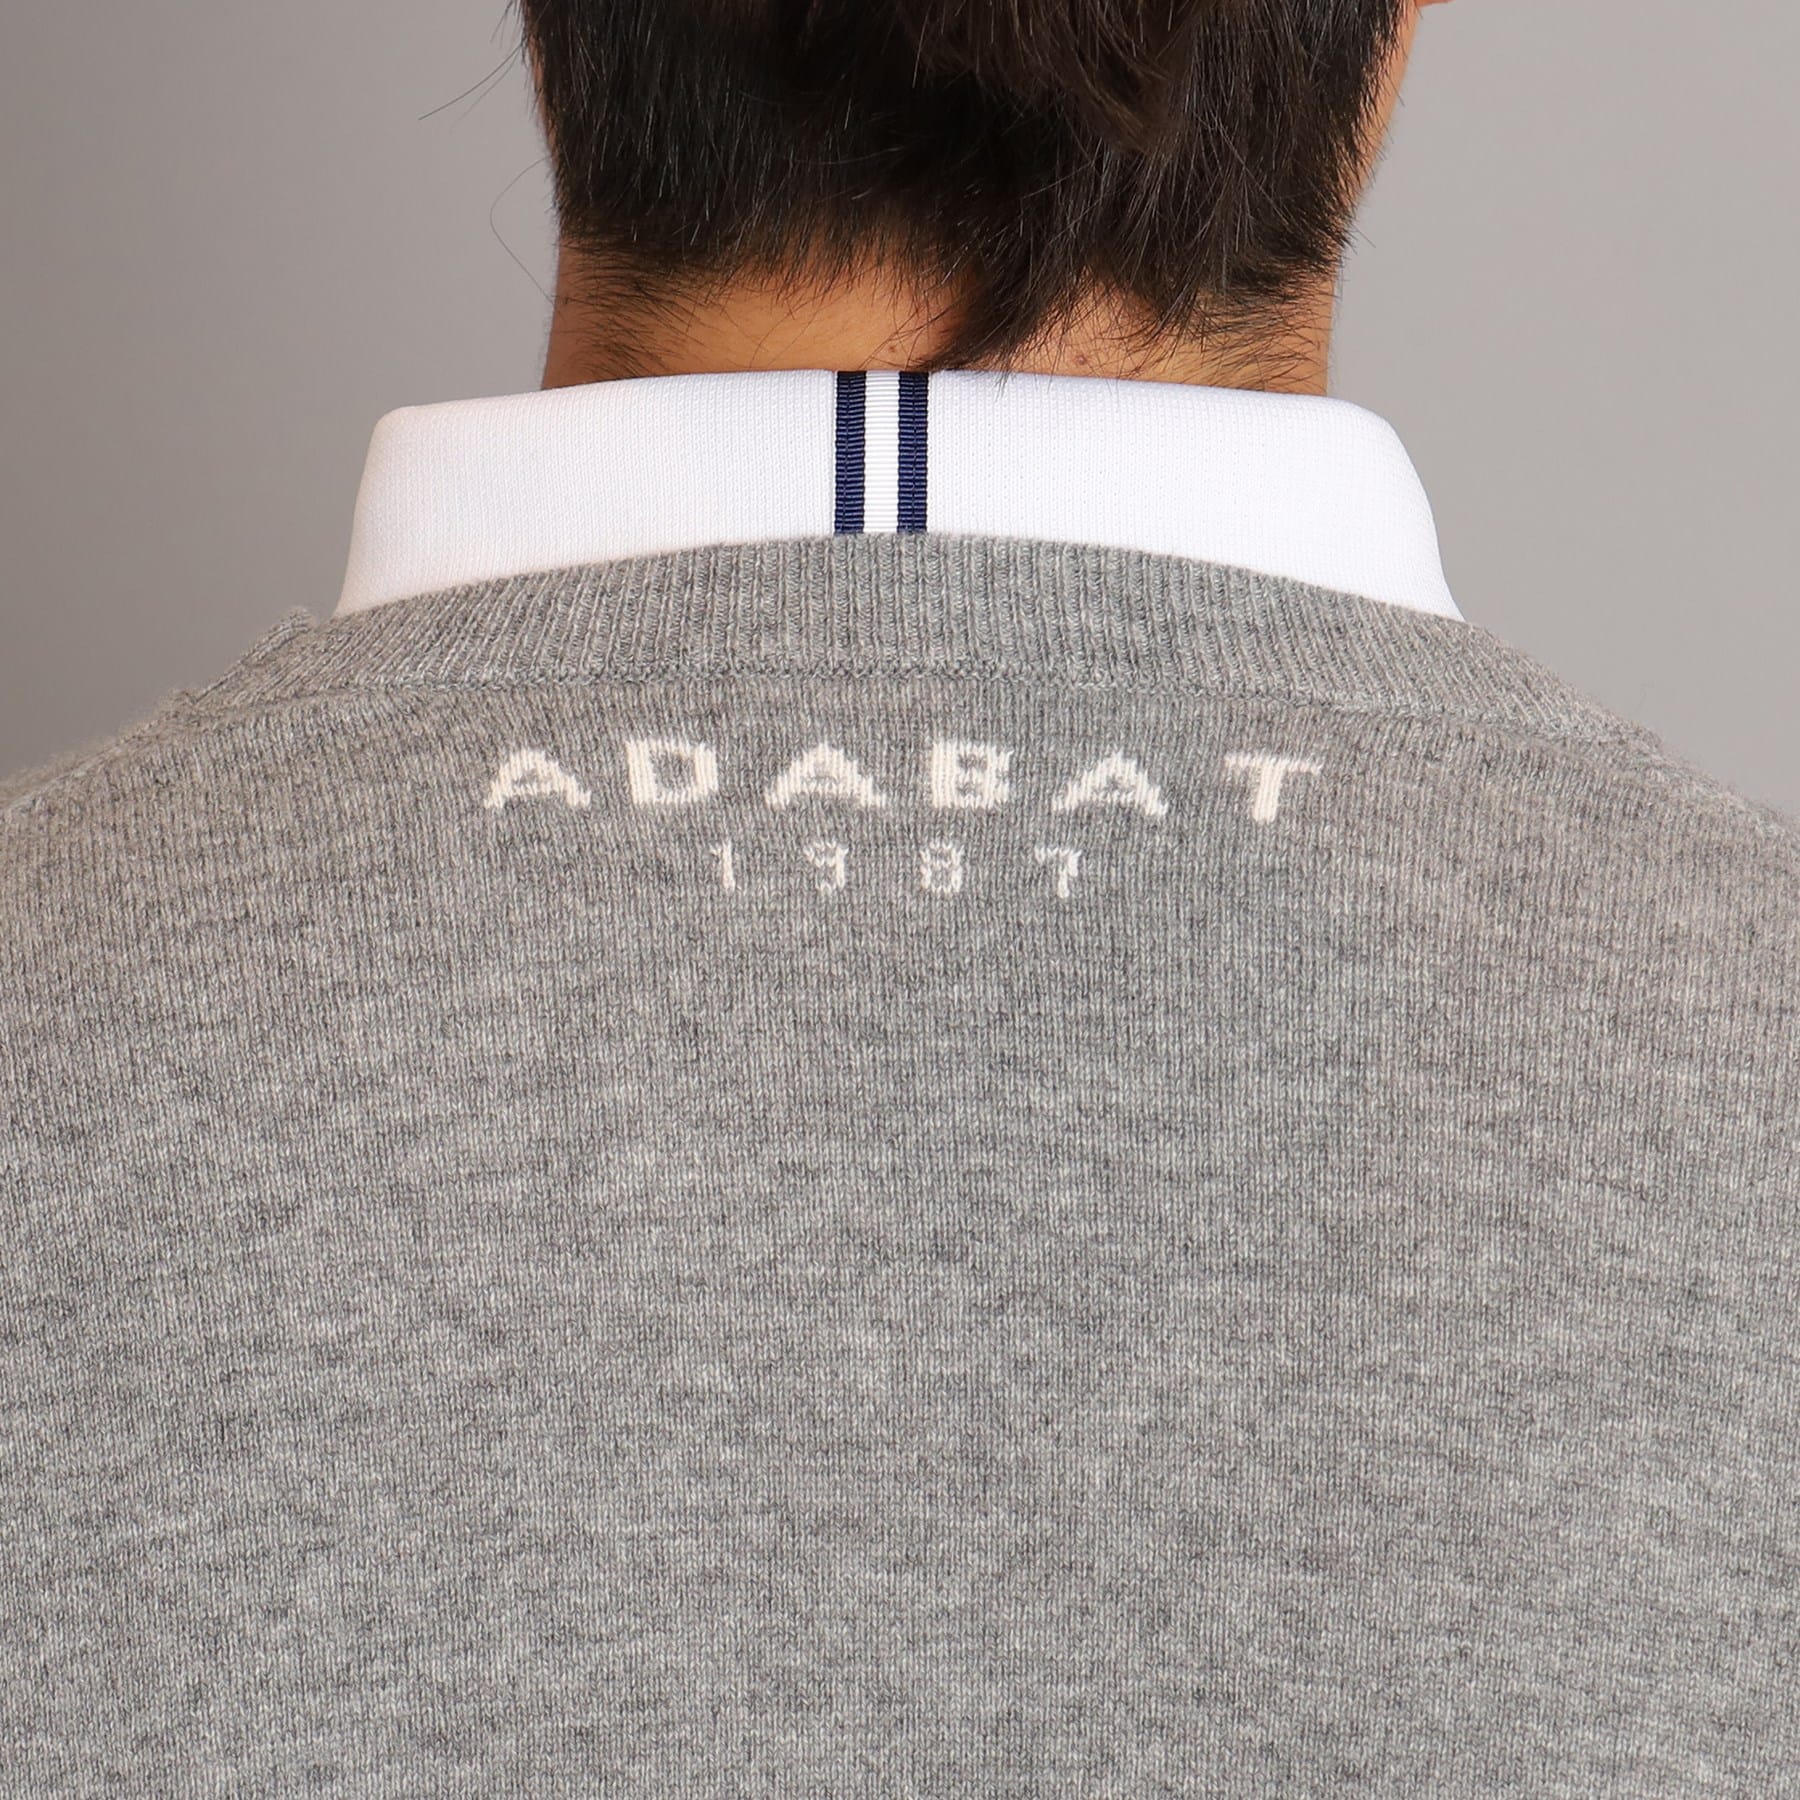 アダバット(メンズ)(adabat(Men))のロゴデザイン クルーネックセーター7